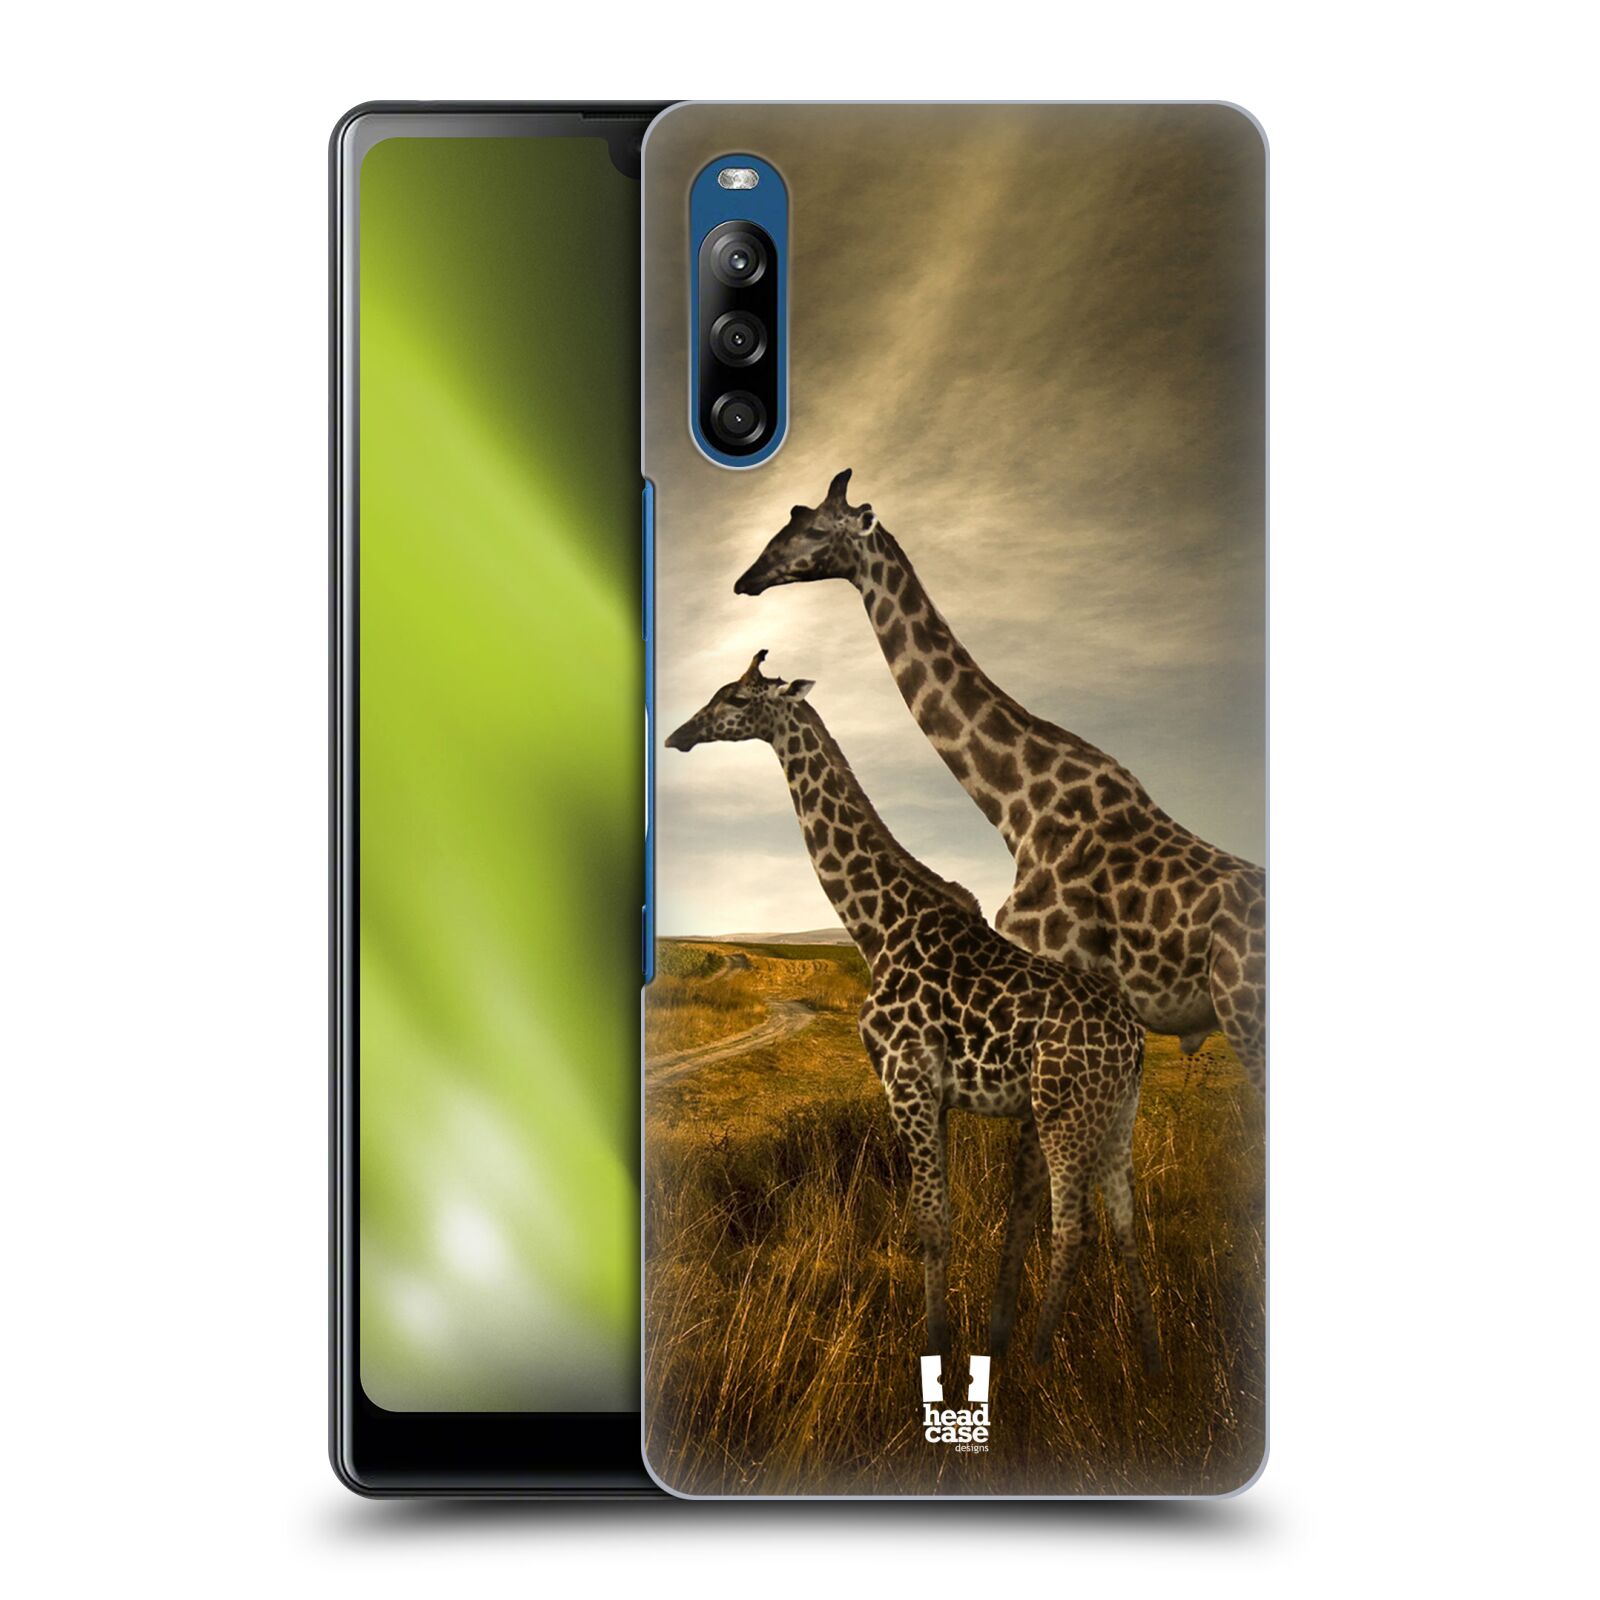 Zadní obal pro mobil Sony Xperia L4 - HEAD CASE - Svět zvířat žirafy